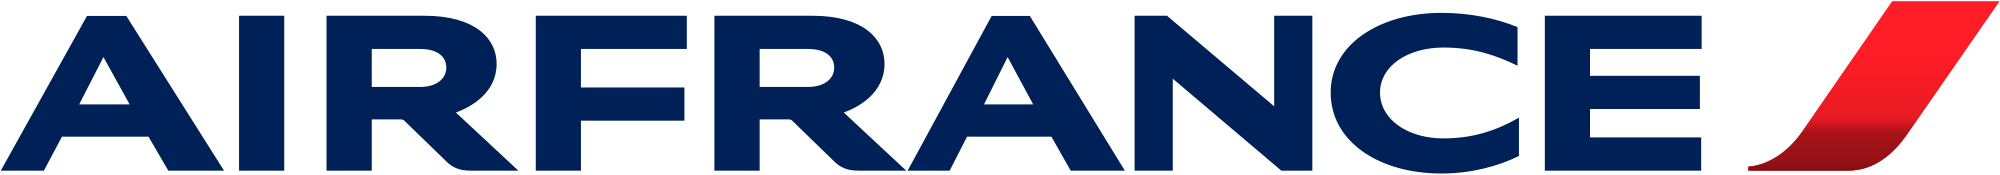 Air France logo vector .